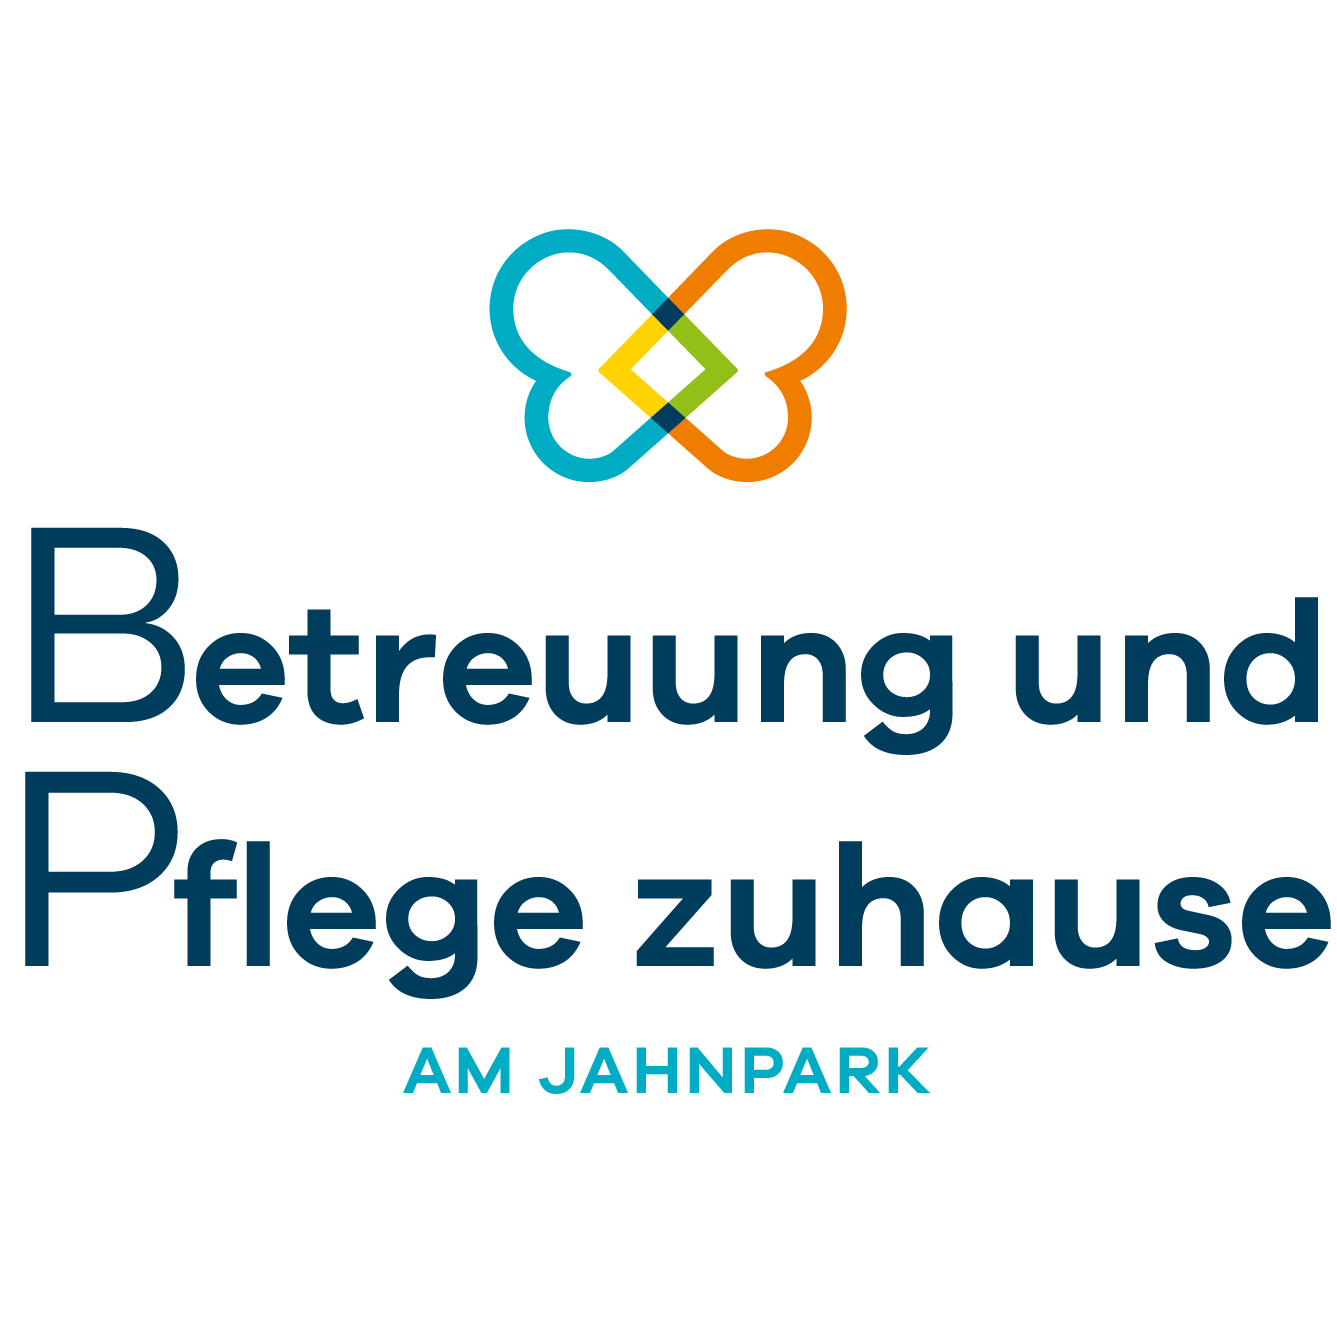 Betreuung und Pflege zuhause am Jahnpark in Altenburg in Thüringen - Logo